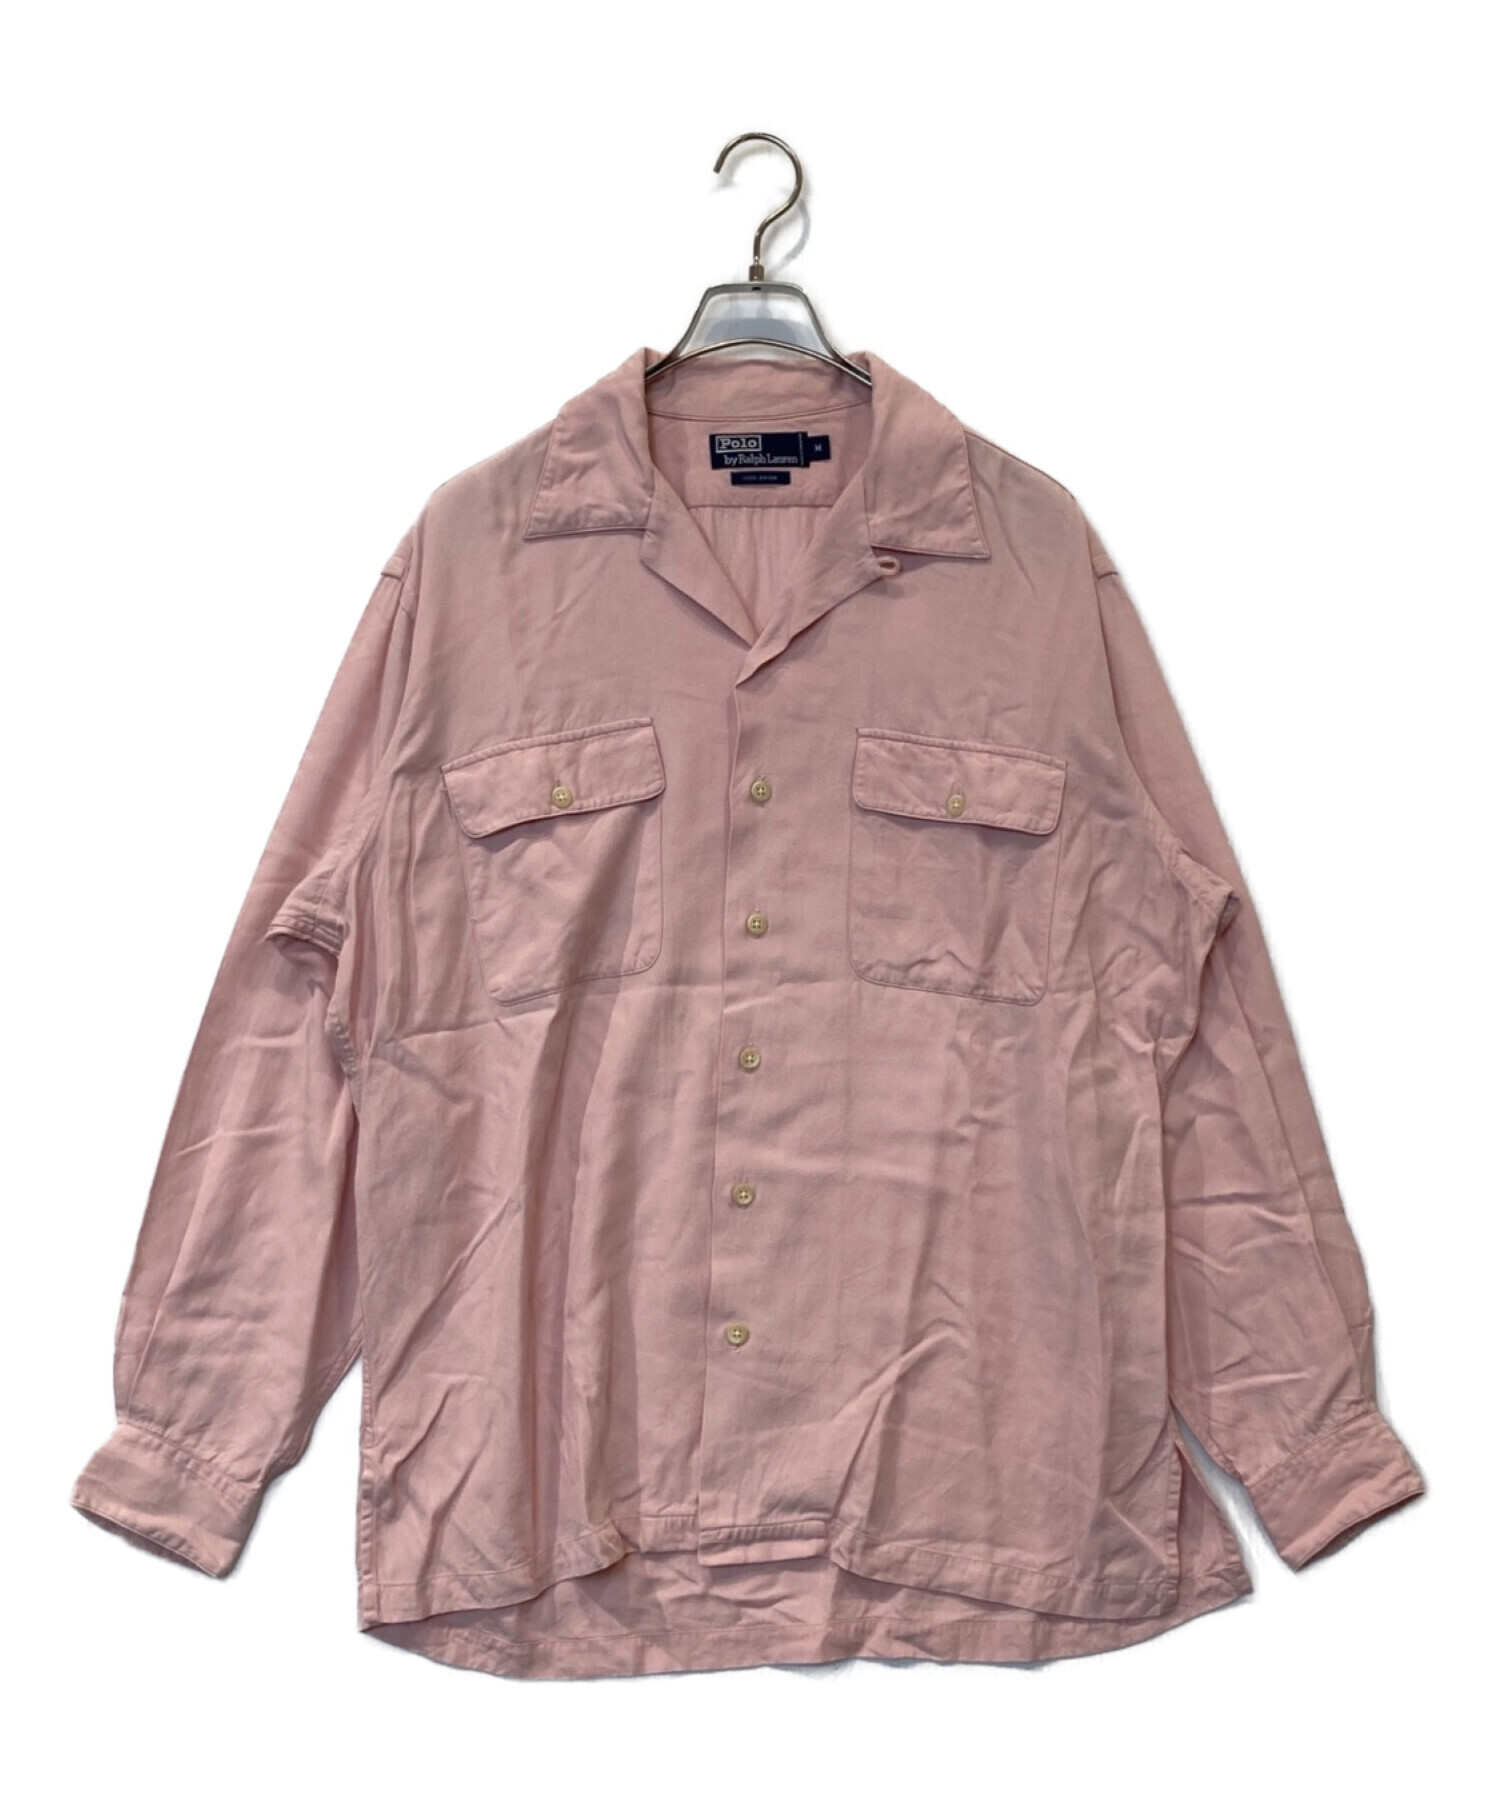 POLO RALPH LAUREN (ポロ・ラルフローレン) レーヨンオープンカラーシャツ ピンク サイズ:M